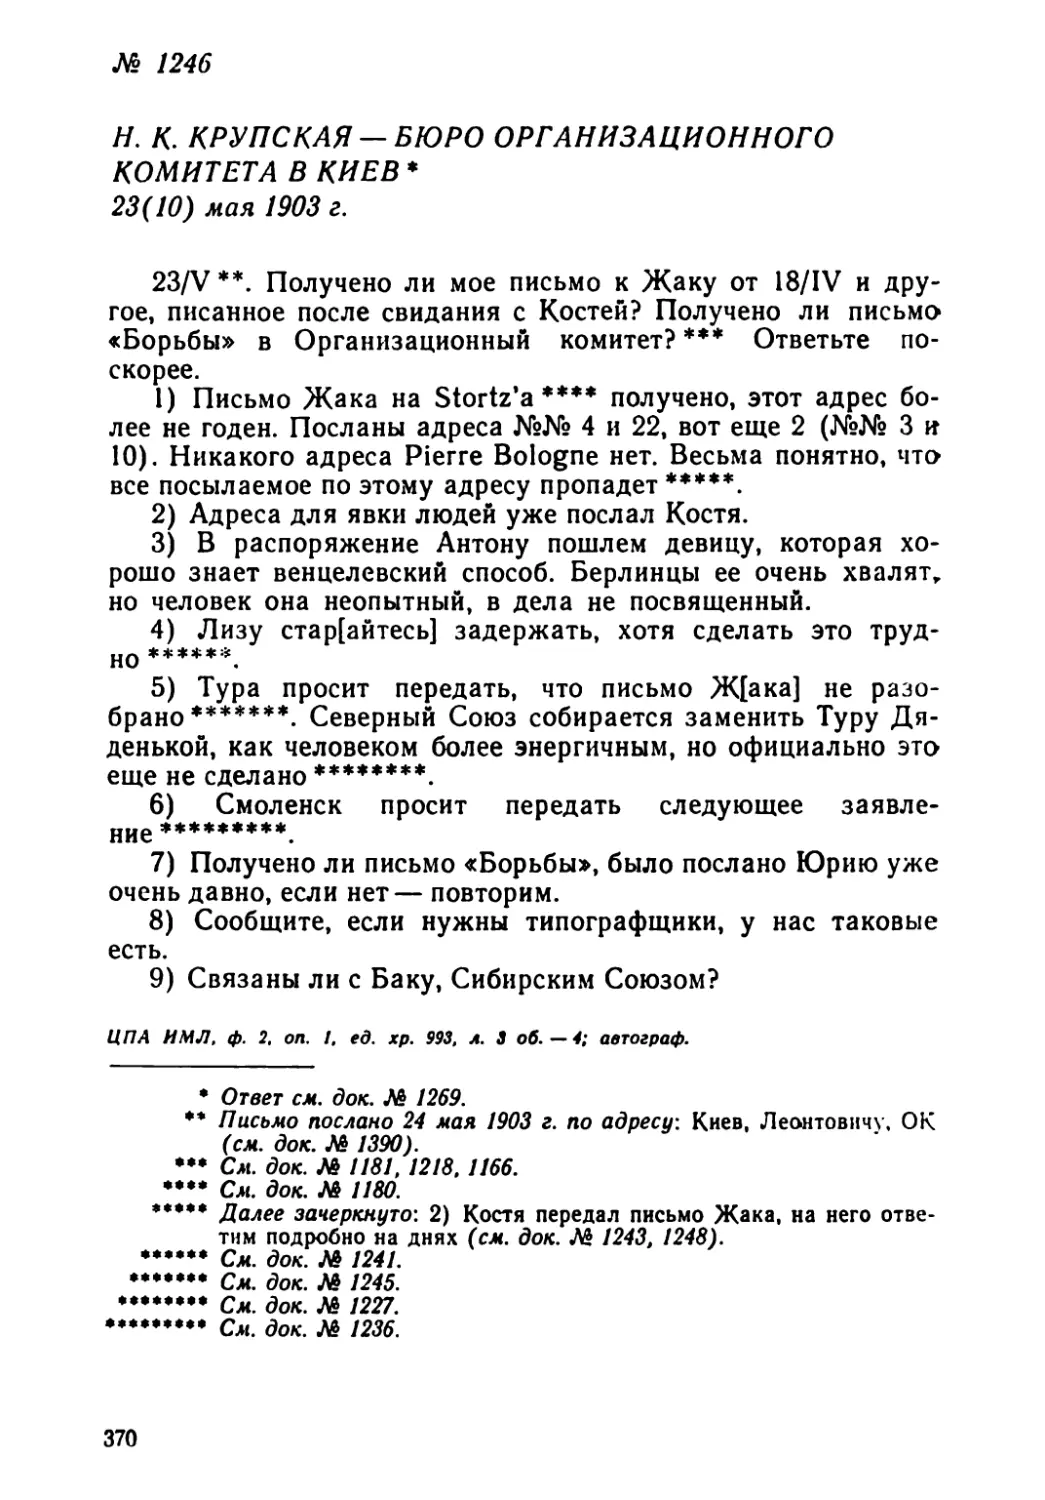 № 1246 Н. К. Крупская — Бюро Организационного комитета в Киев. 23 мая